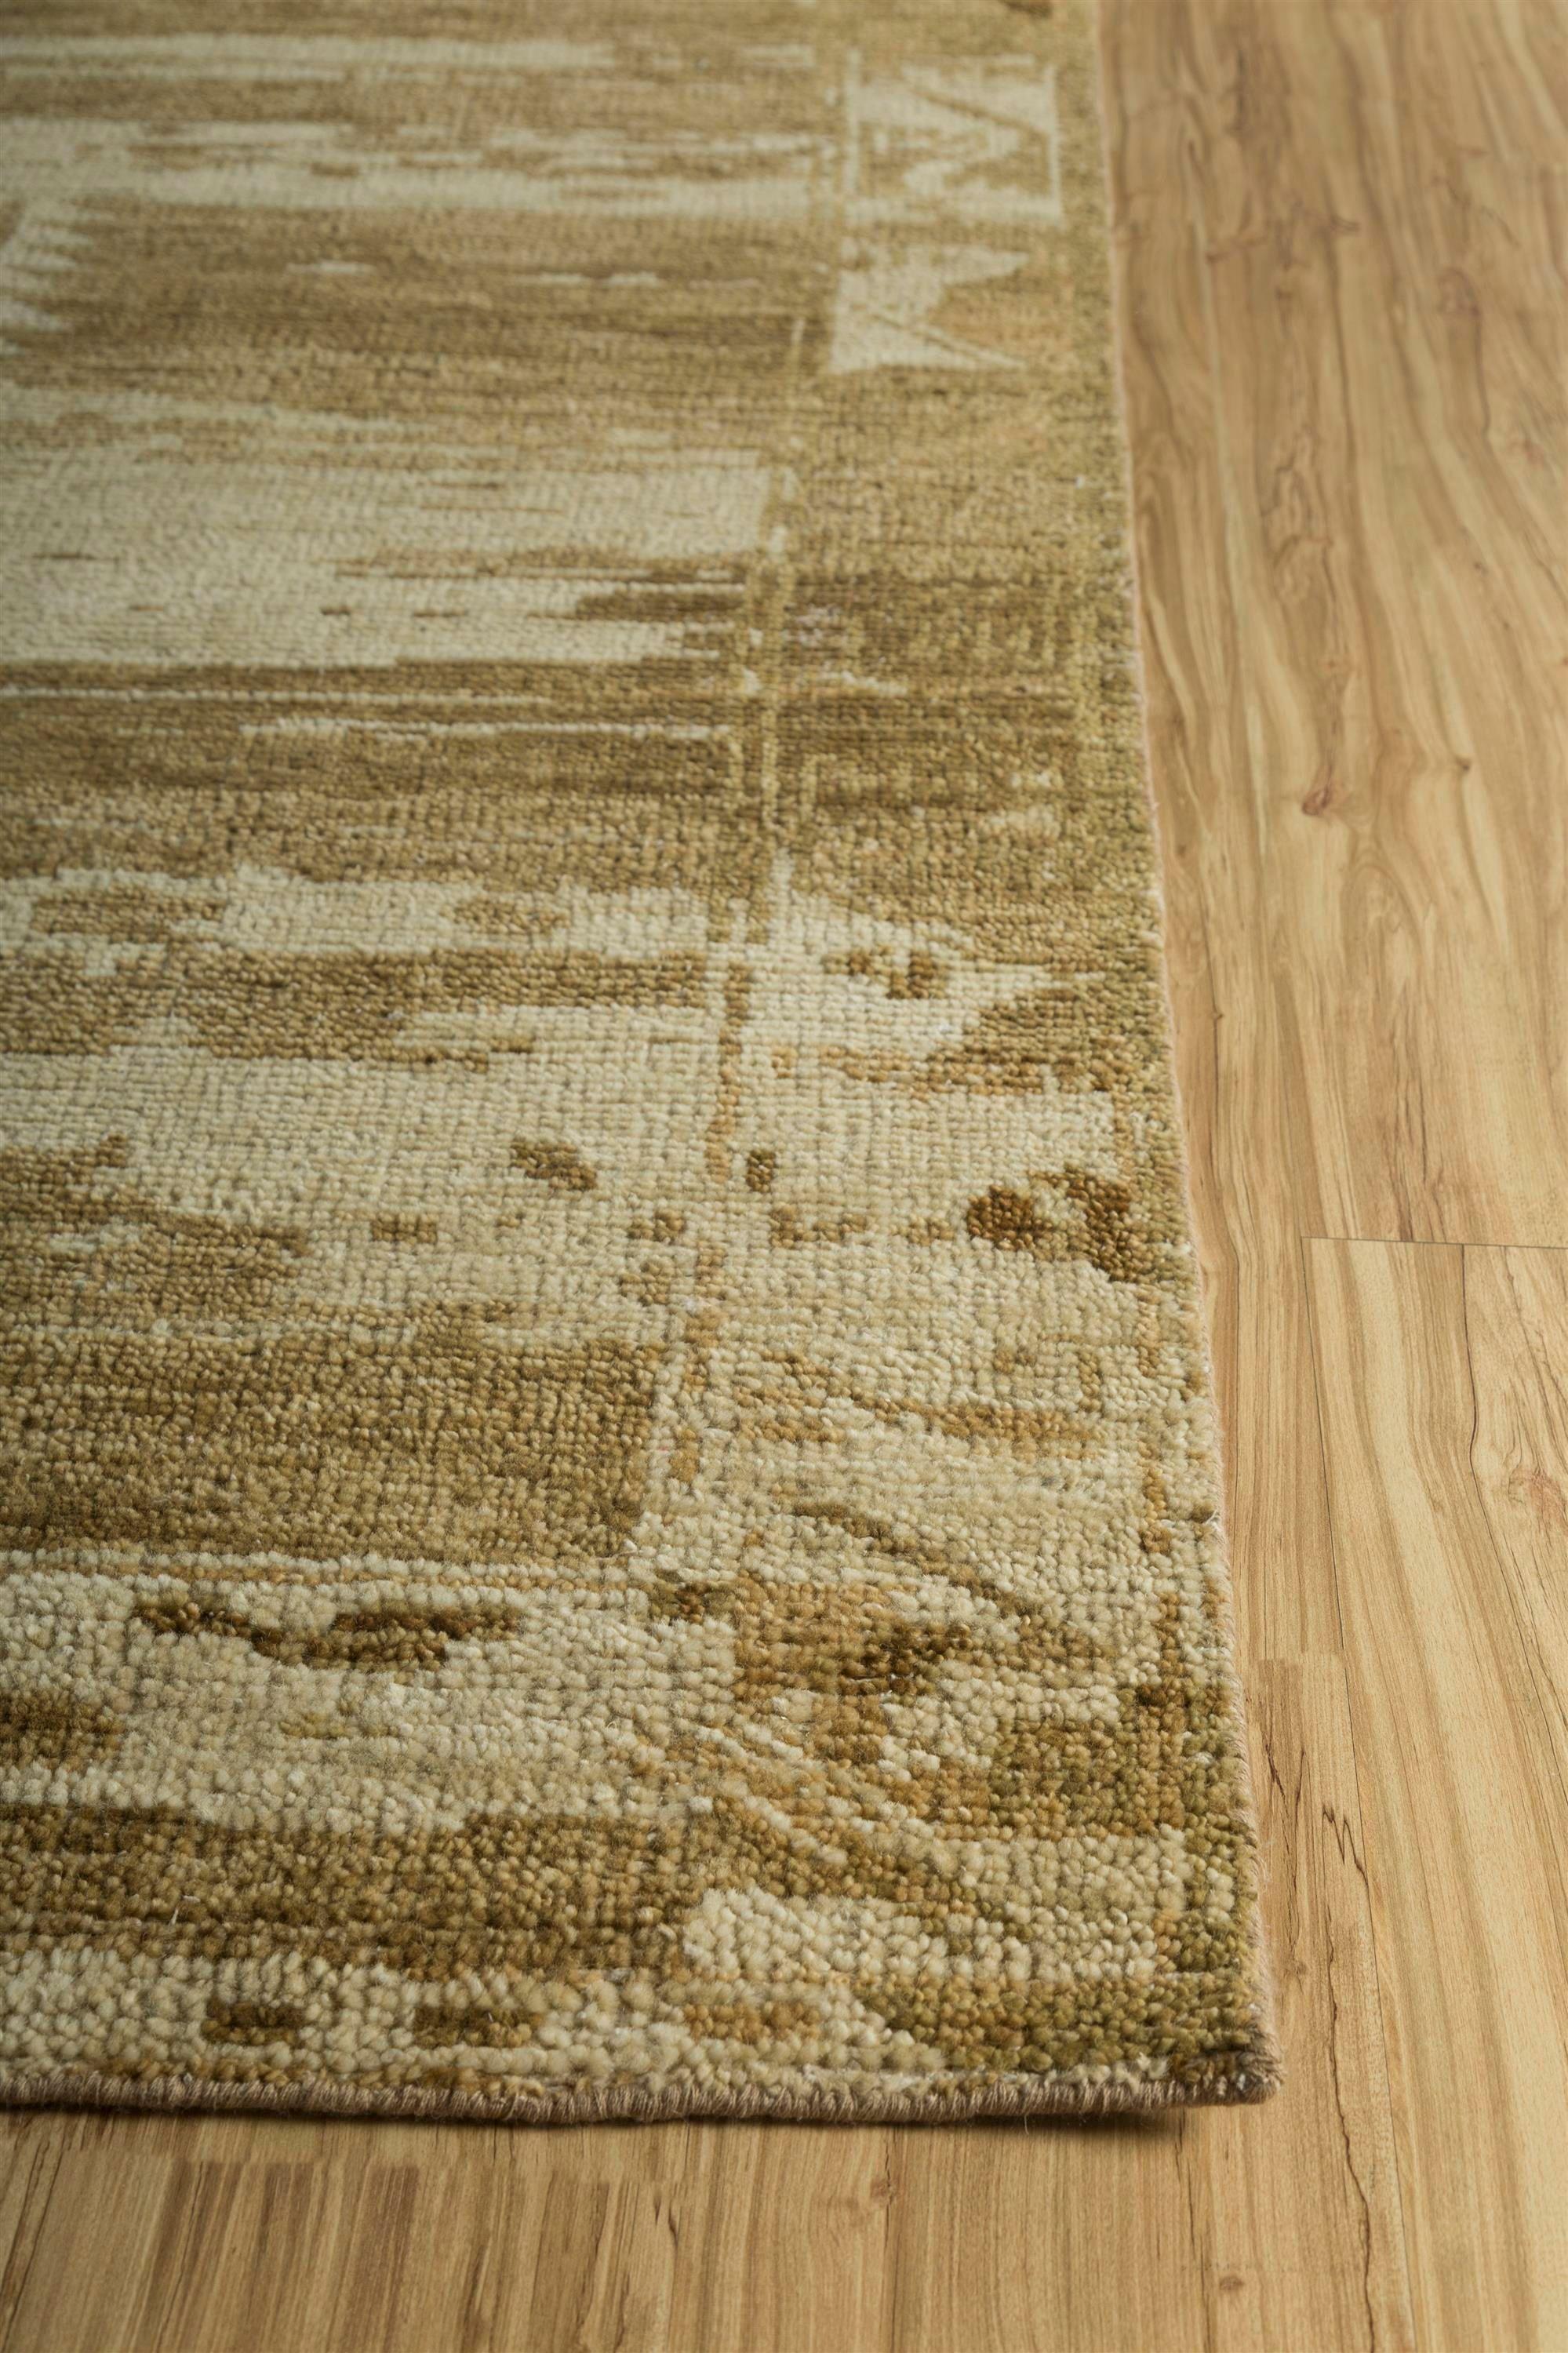 Ce tapis tissé à la main de notre collection Manifest s'inspire du jeu harmonieux des tons sable et brun épicé, créant une atmosphère chaleureuse et accueillante. Le tapis présente un motif tissé complexe rappelant les motifs traditionnels, mais